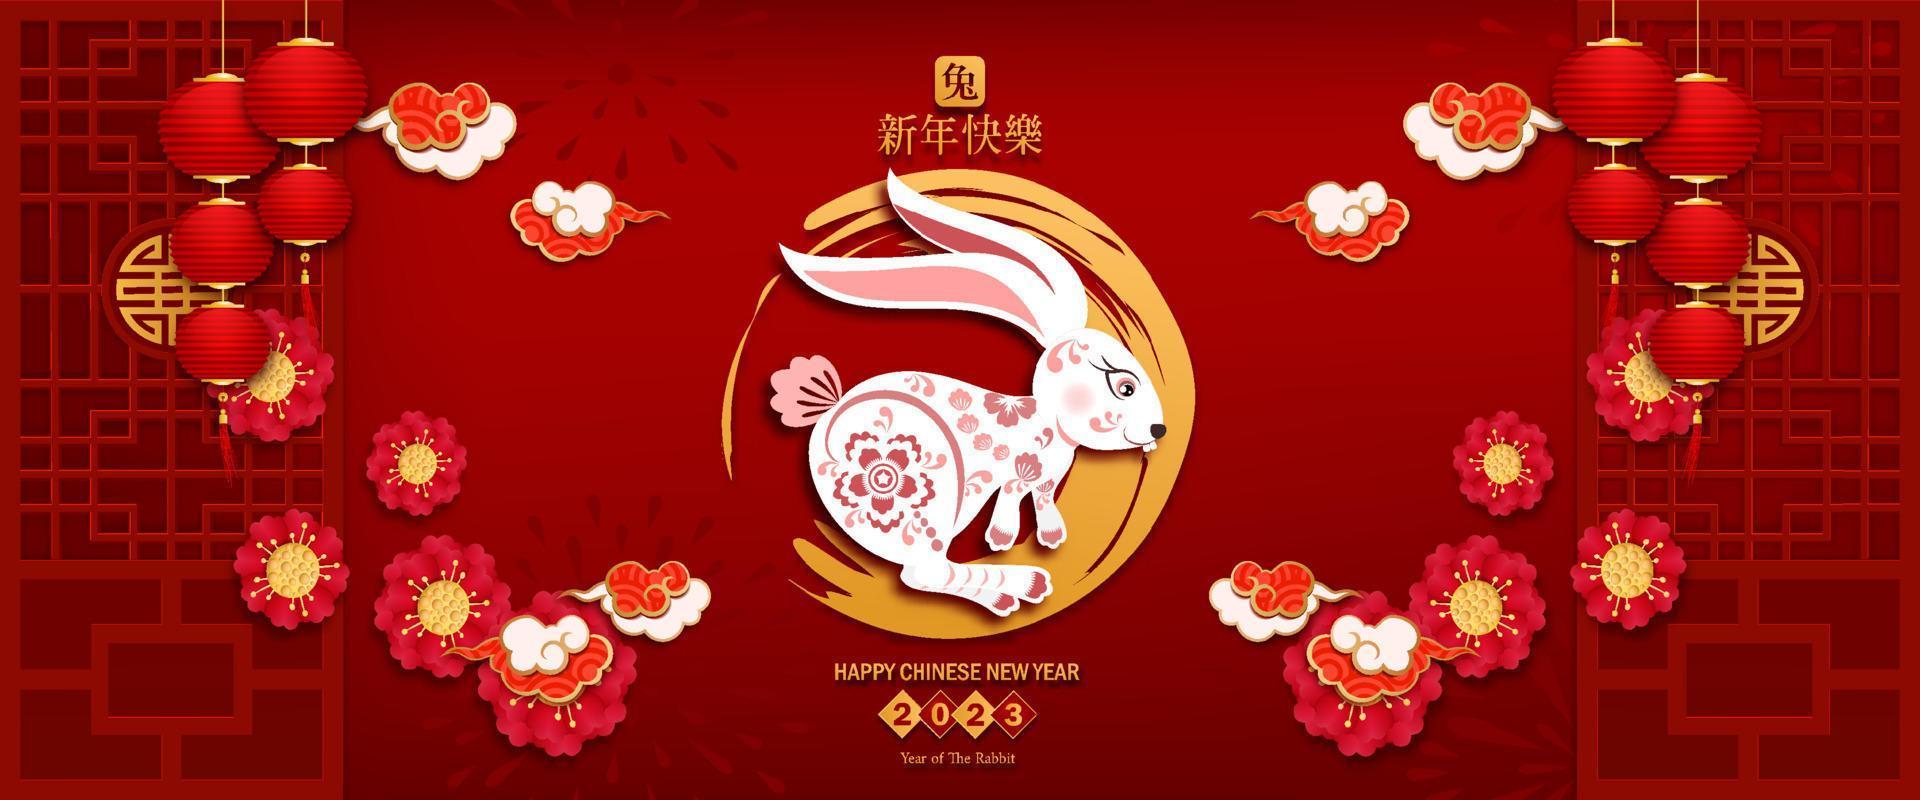 banner frohes chinesisches neujahr 2023. jahr des kaninchencharakters im asiatischen stil. chinesische übersetzung ist gemeines jahr des kaninchens, frohes chinesisches neujahr. vektor